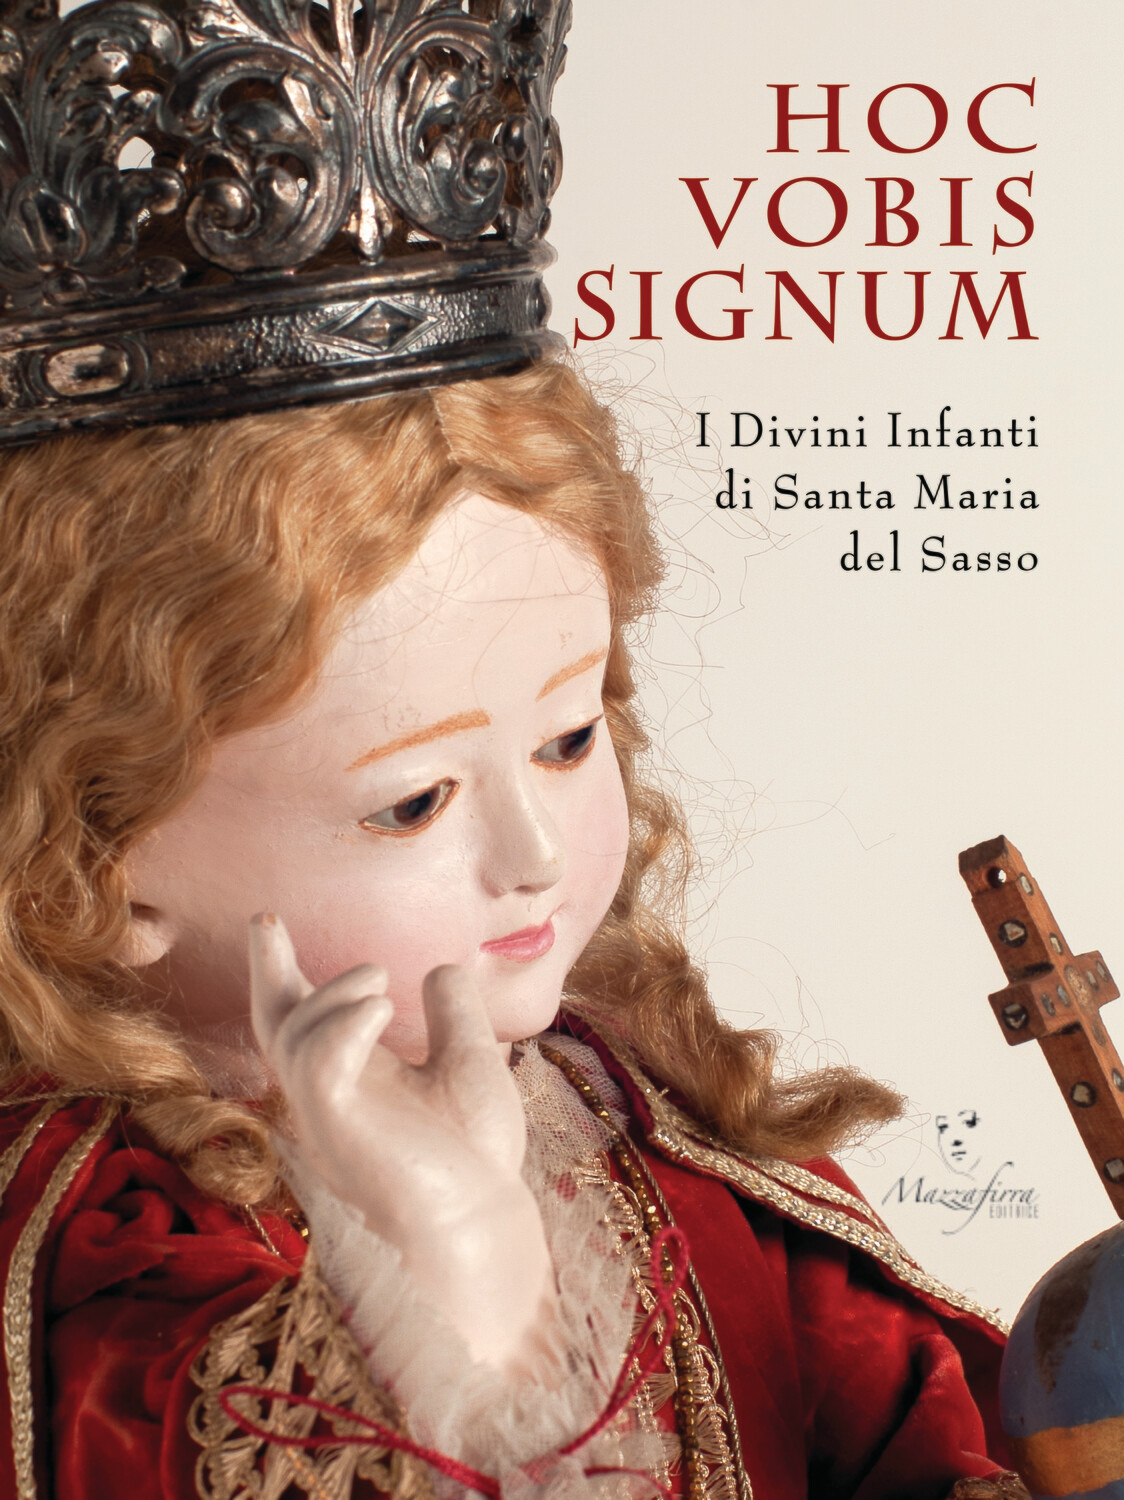 HOC VOBIS SIGNUM. I Divini Infanti di Santa Maria del Sasso